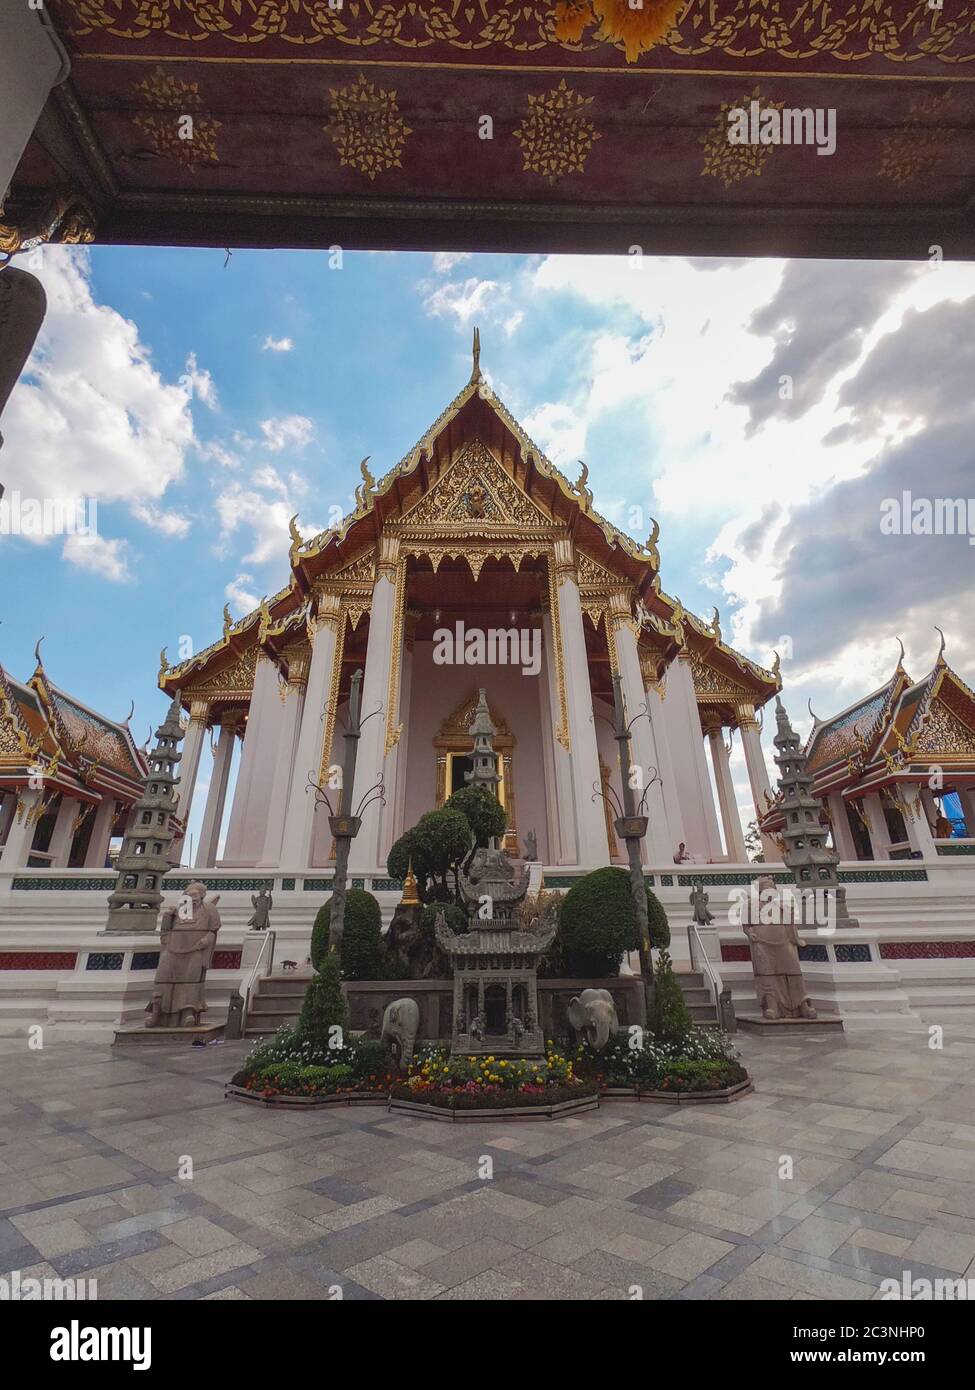 Belle architecture ancienne du temple bouddhiste Wat Suthat Thepwararam à Bangkok, Thaïlande Banque D'Images